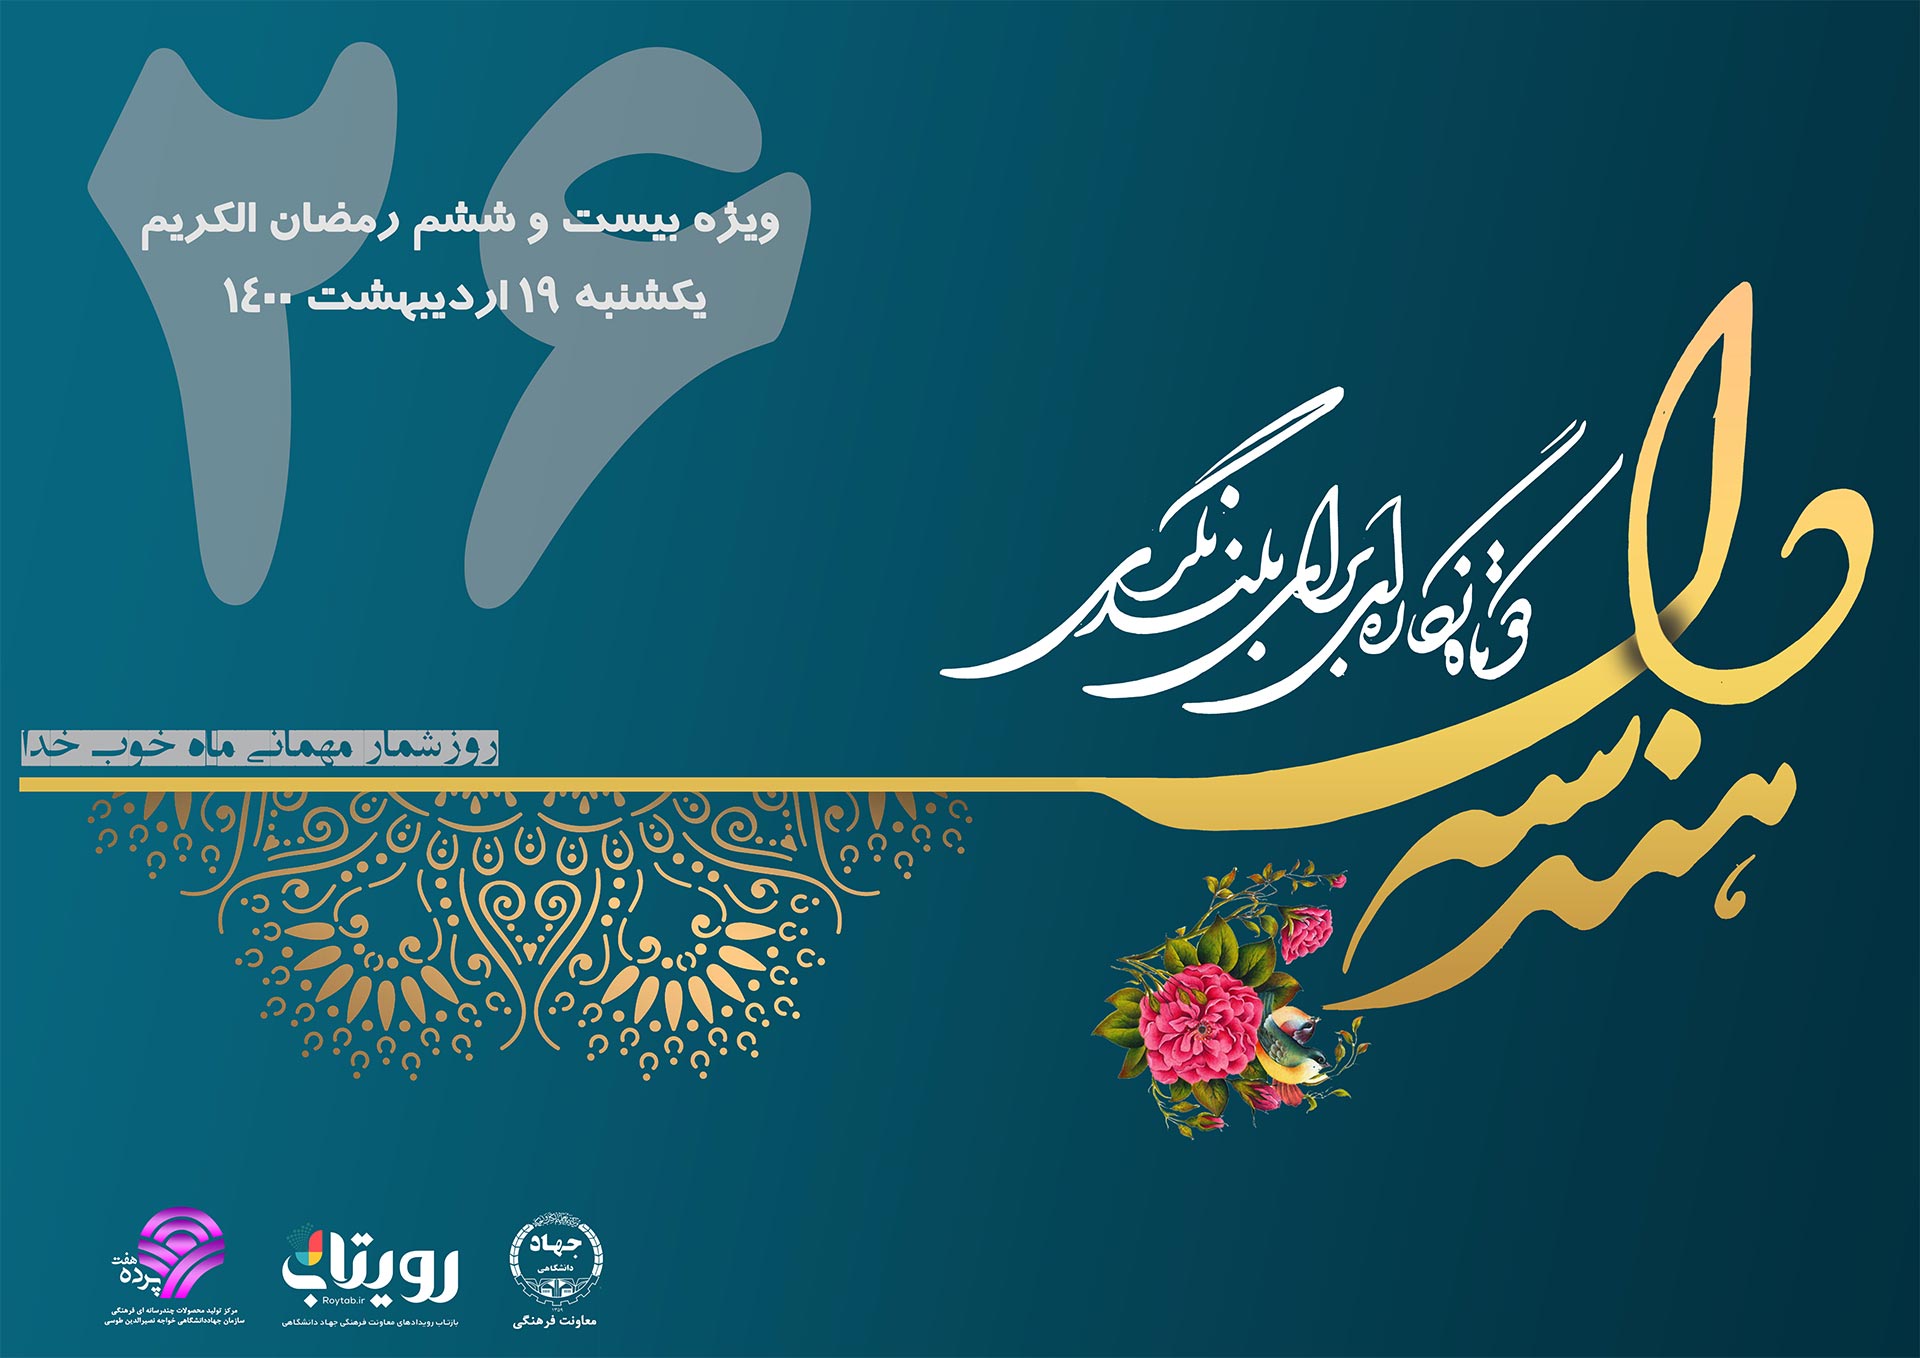 نماهنگ «هندسه دل» ویژه بیست و ششم ماه مبارک رمضان